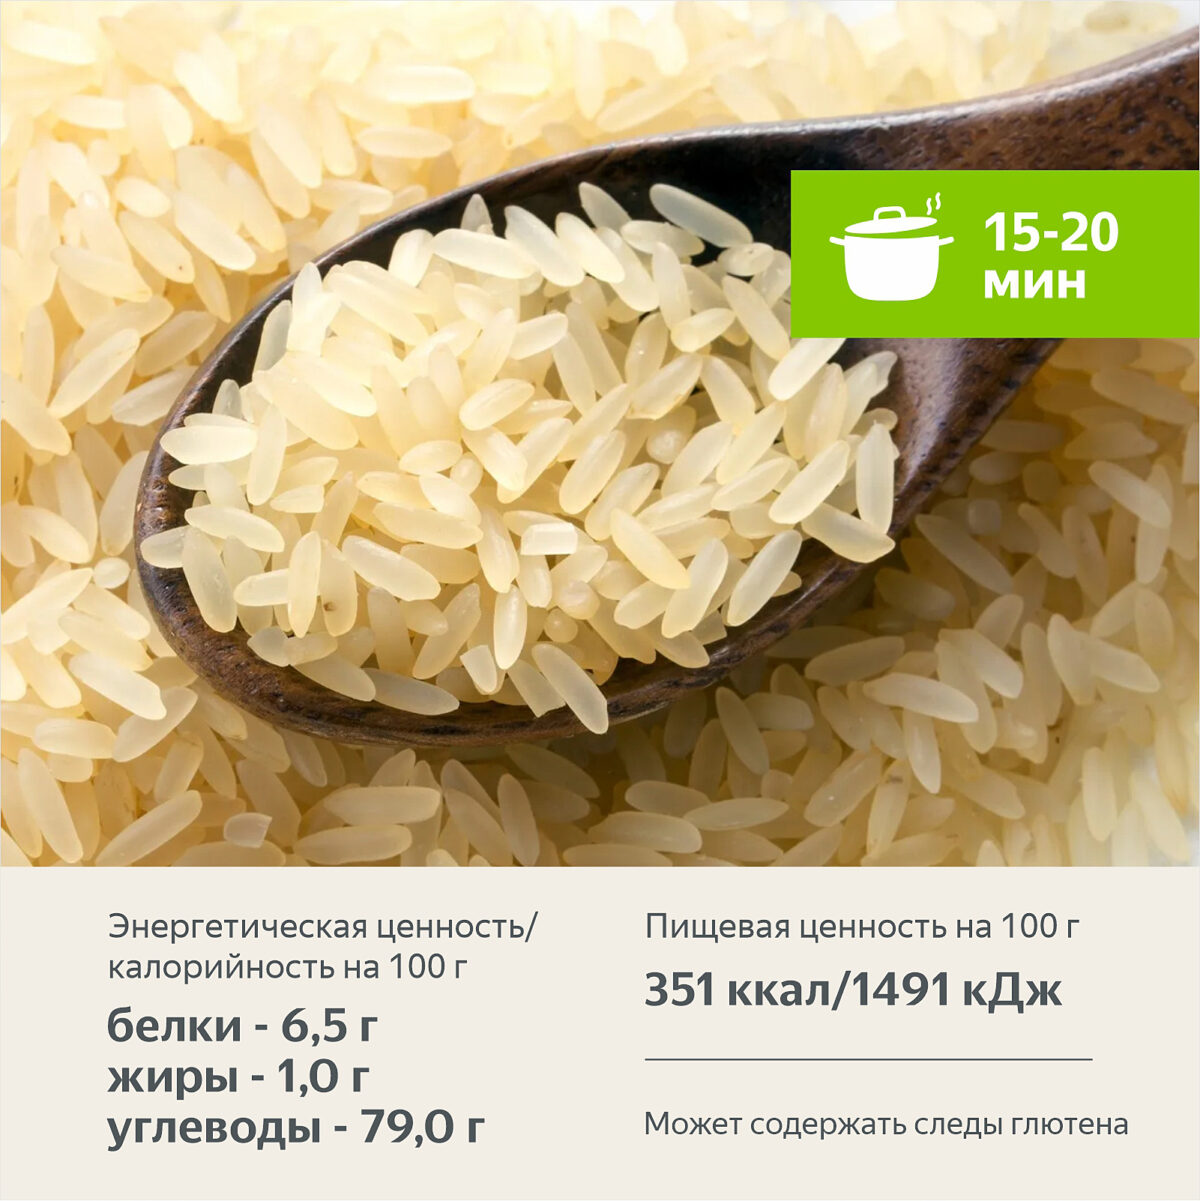 Рис пропаренный в варочных пакетах 400 гр. Алтайские крупы - Интернет-магазин